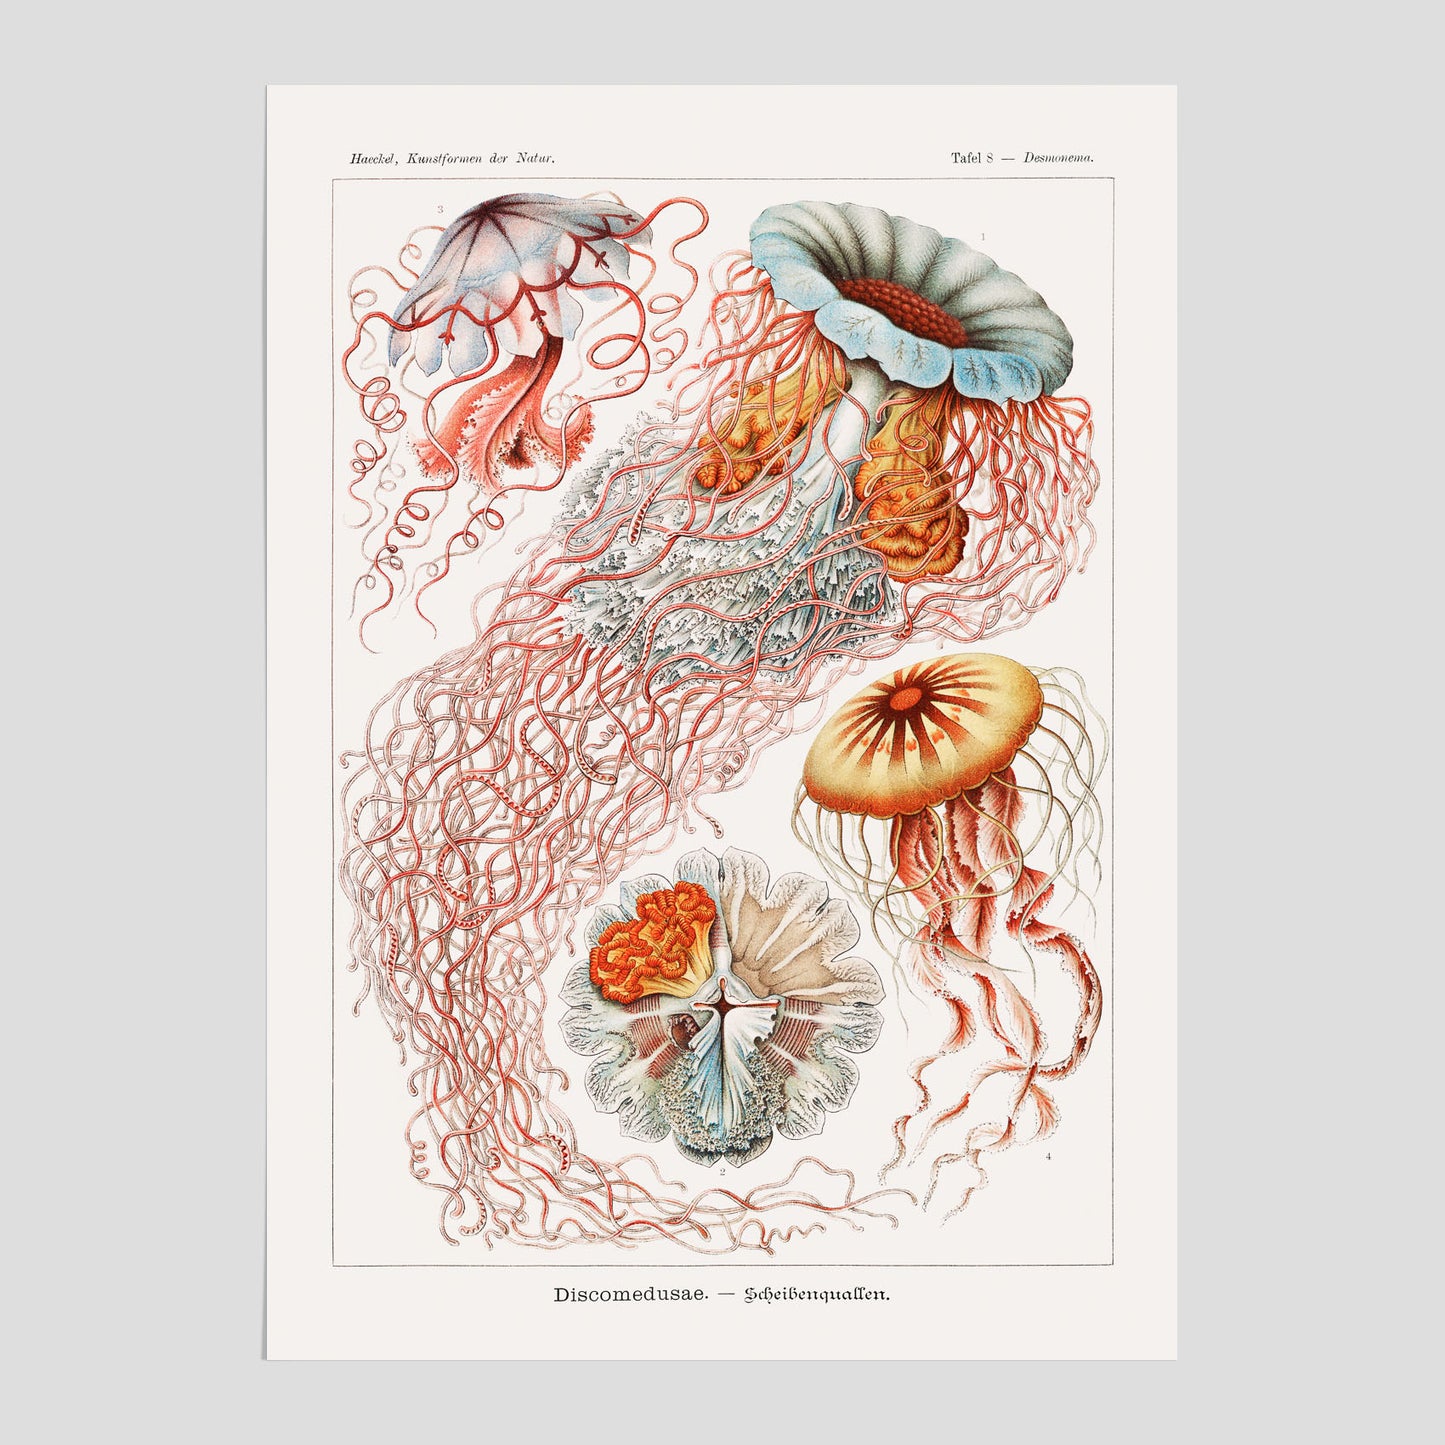 Maneter poster  – Havsposter med skivmaneter av Ernst Haeckel